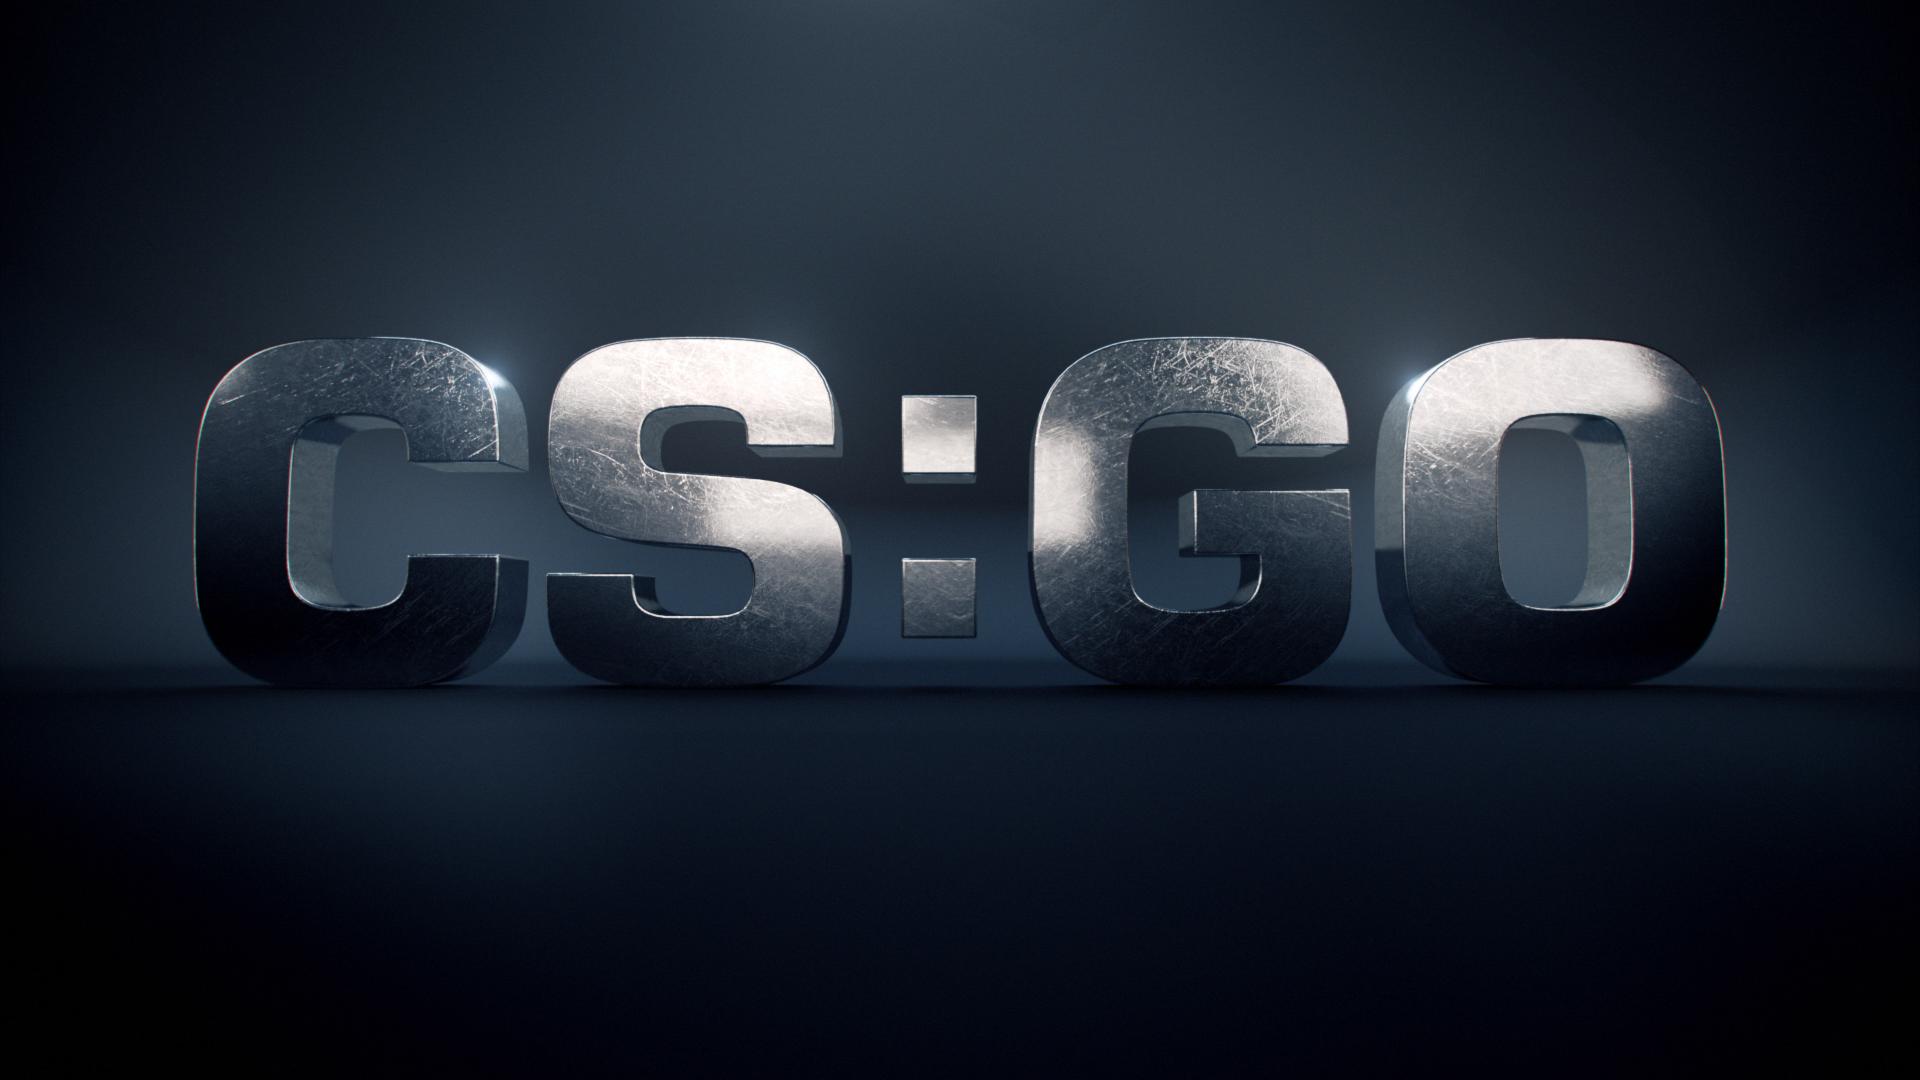 csgo logo created by -harru